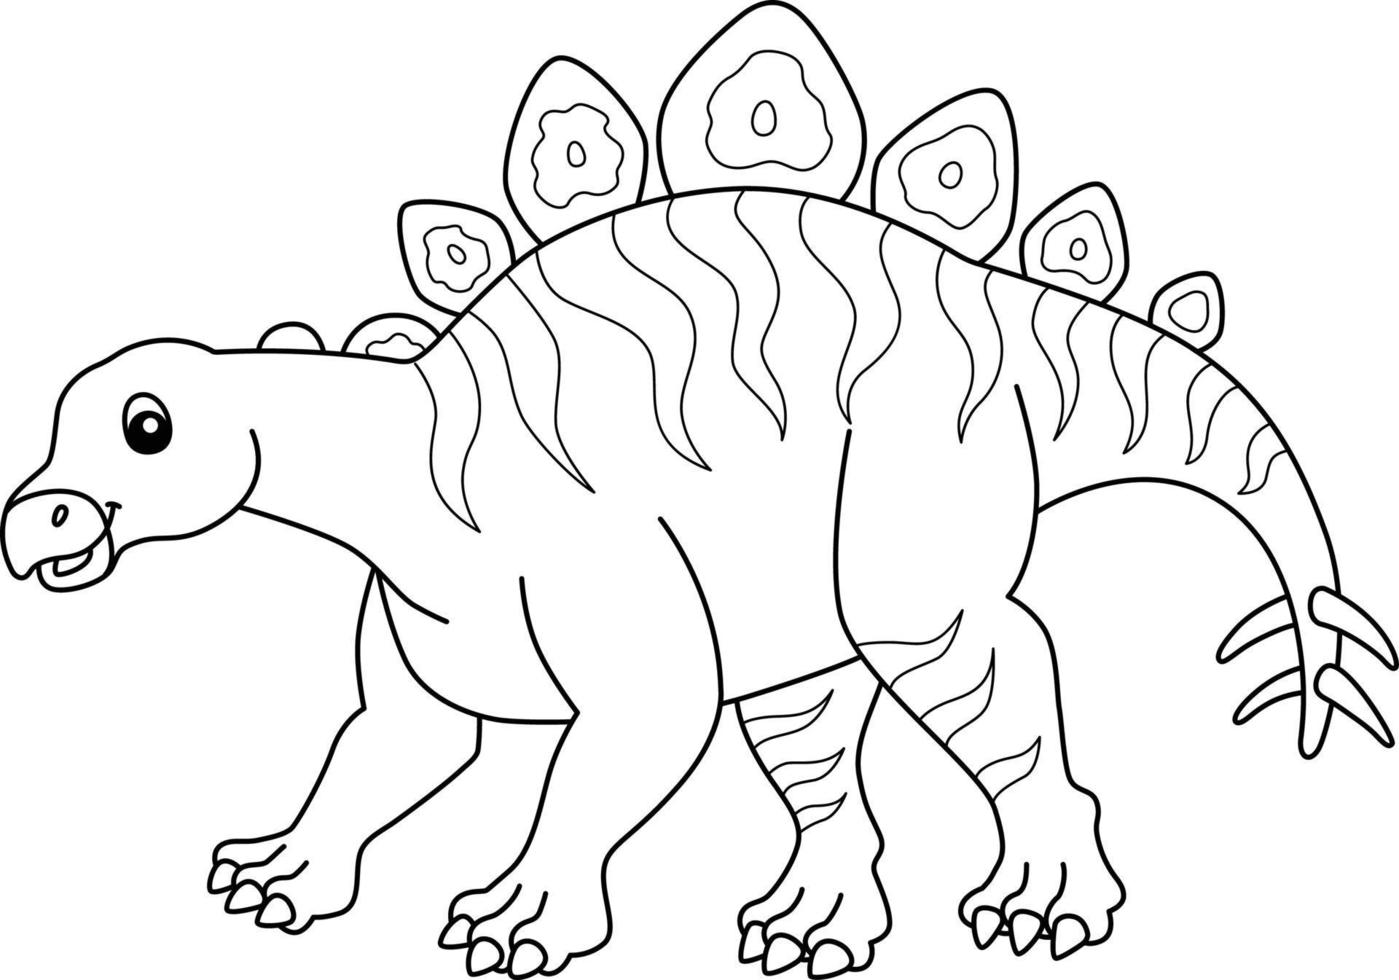 hesperosaurus para colorear página aislada para niños vector